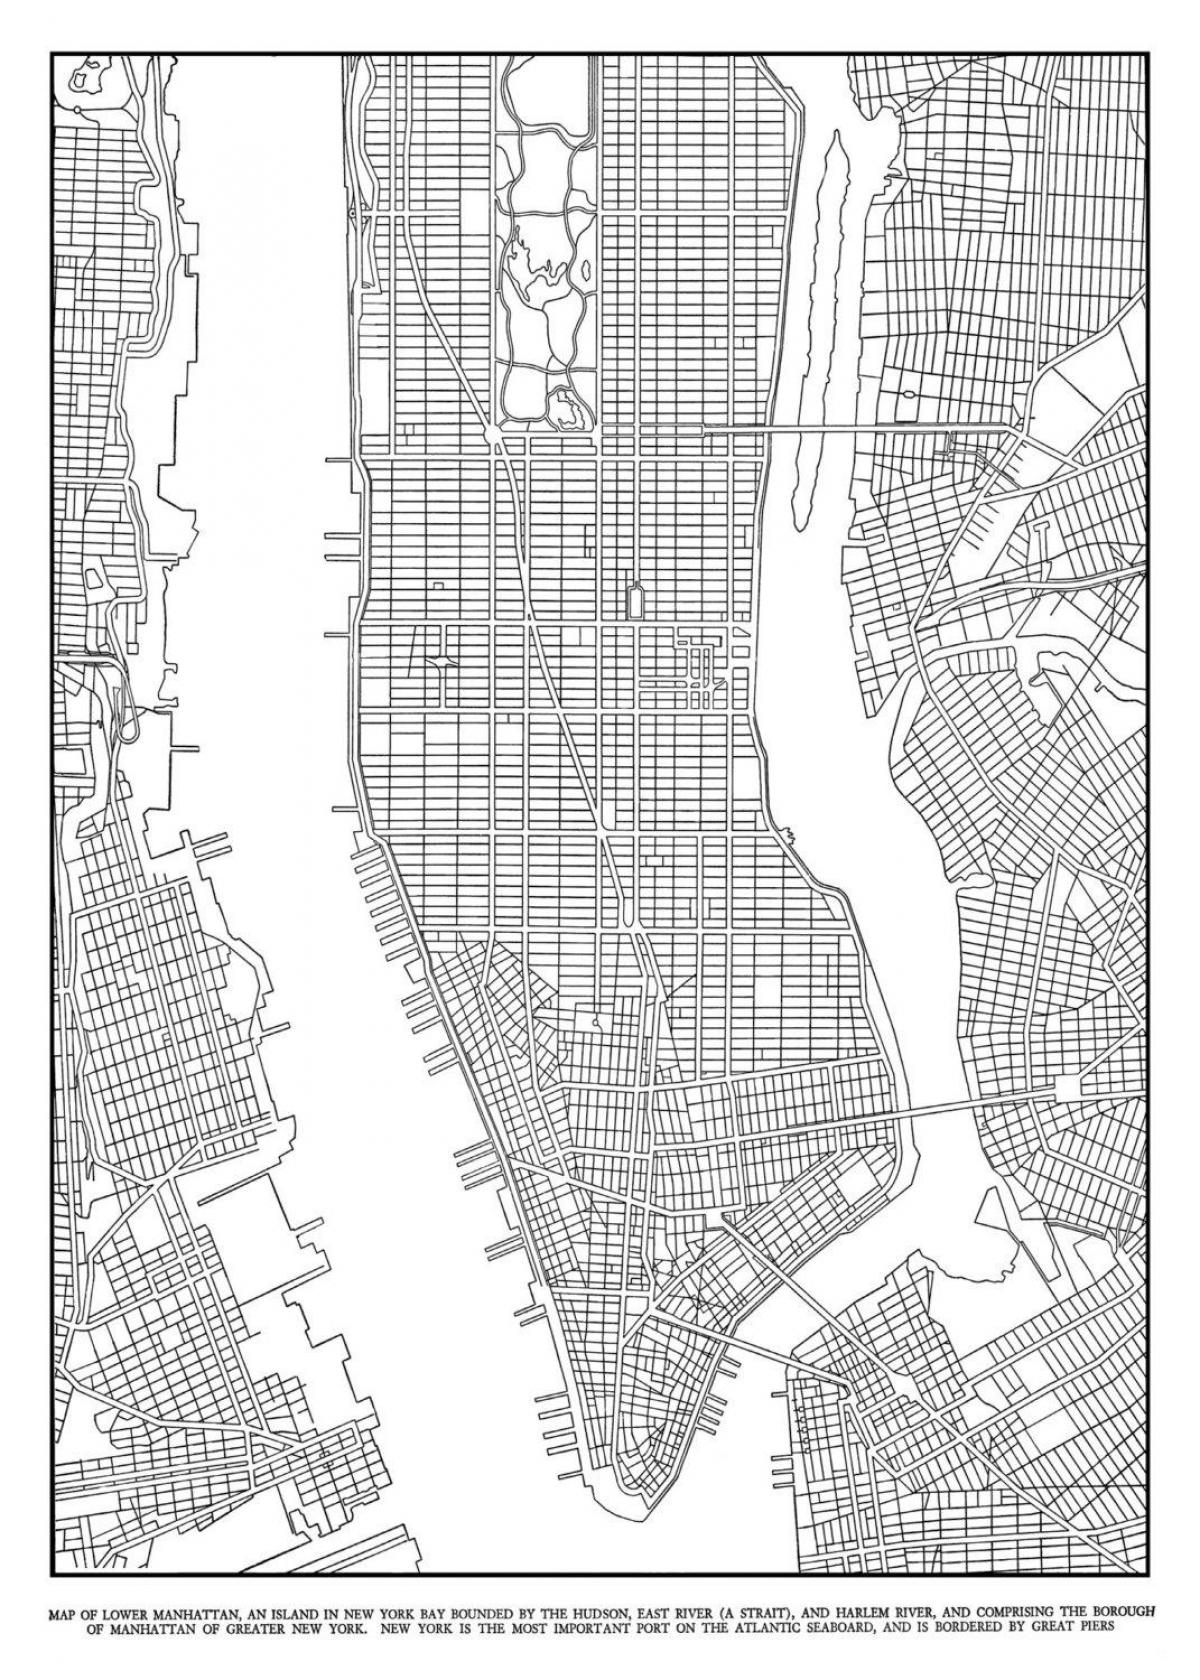 քարտեզ Մանհեթենի ցանց